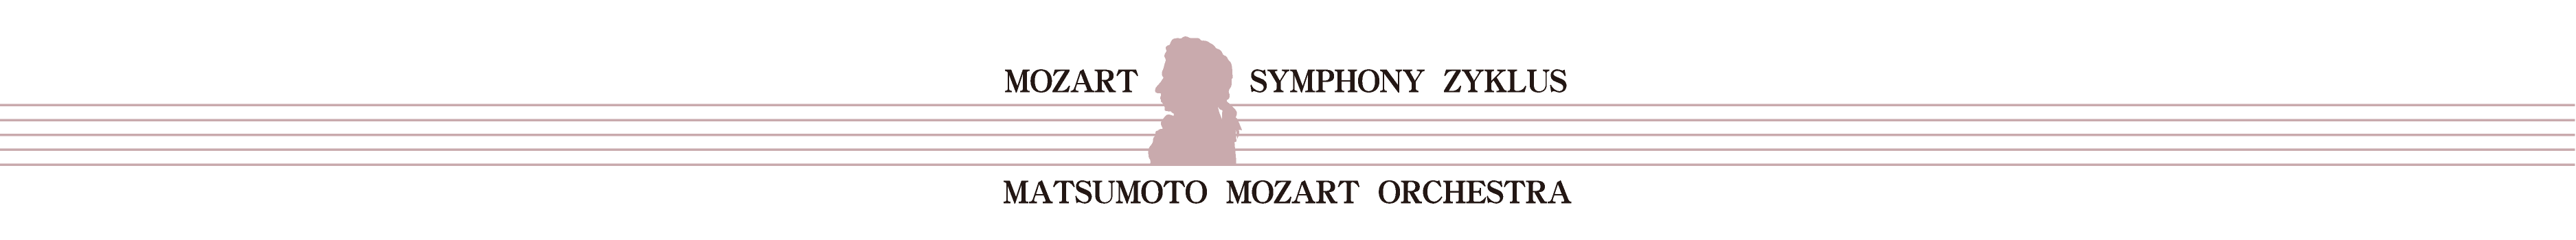 第17回 モーツァルト交響曲・全曲演奏会